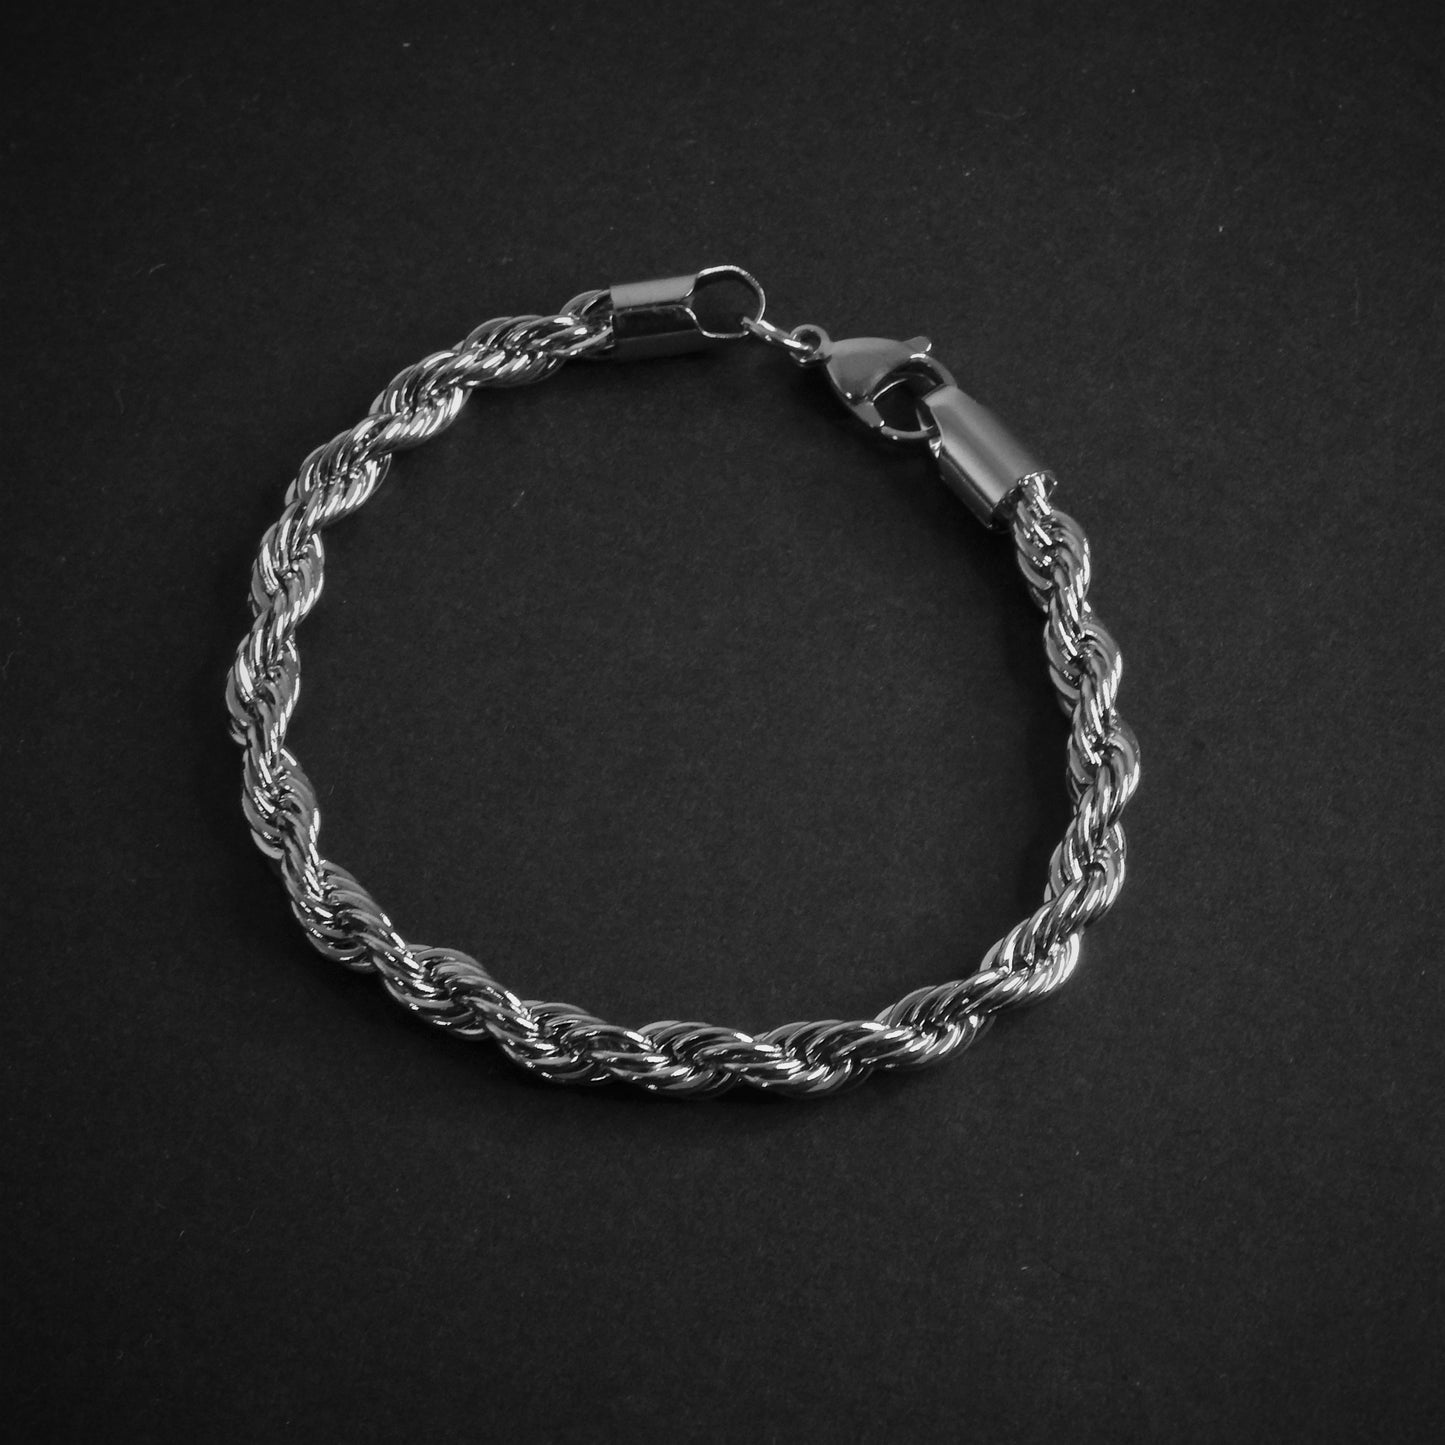 Rope bracelet 6 mm - Gold Dealers